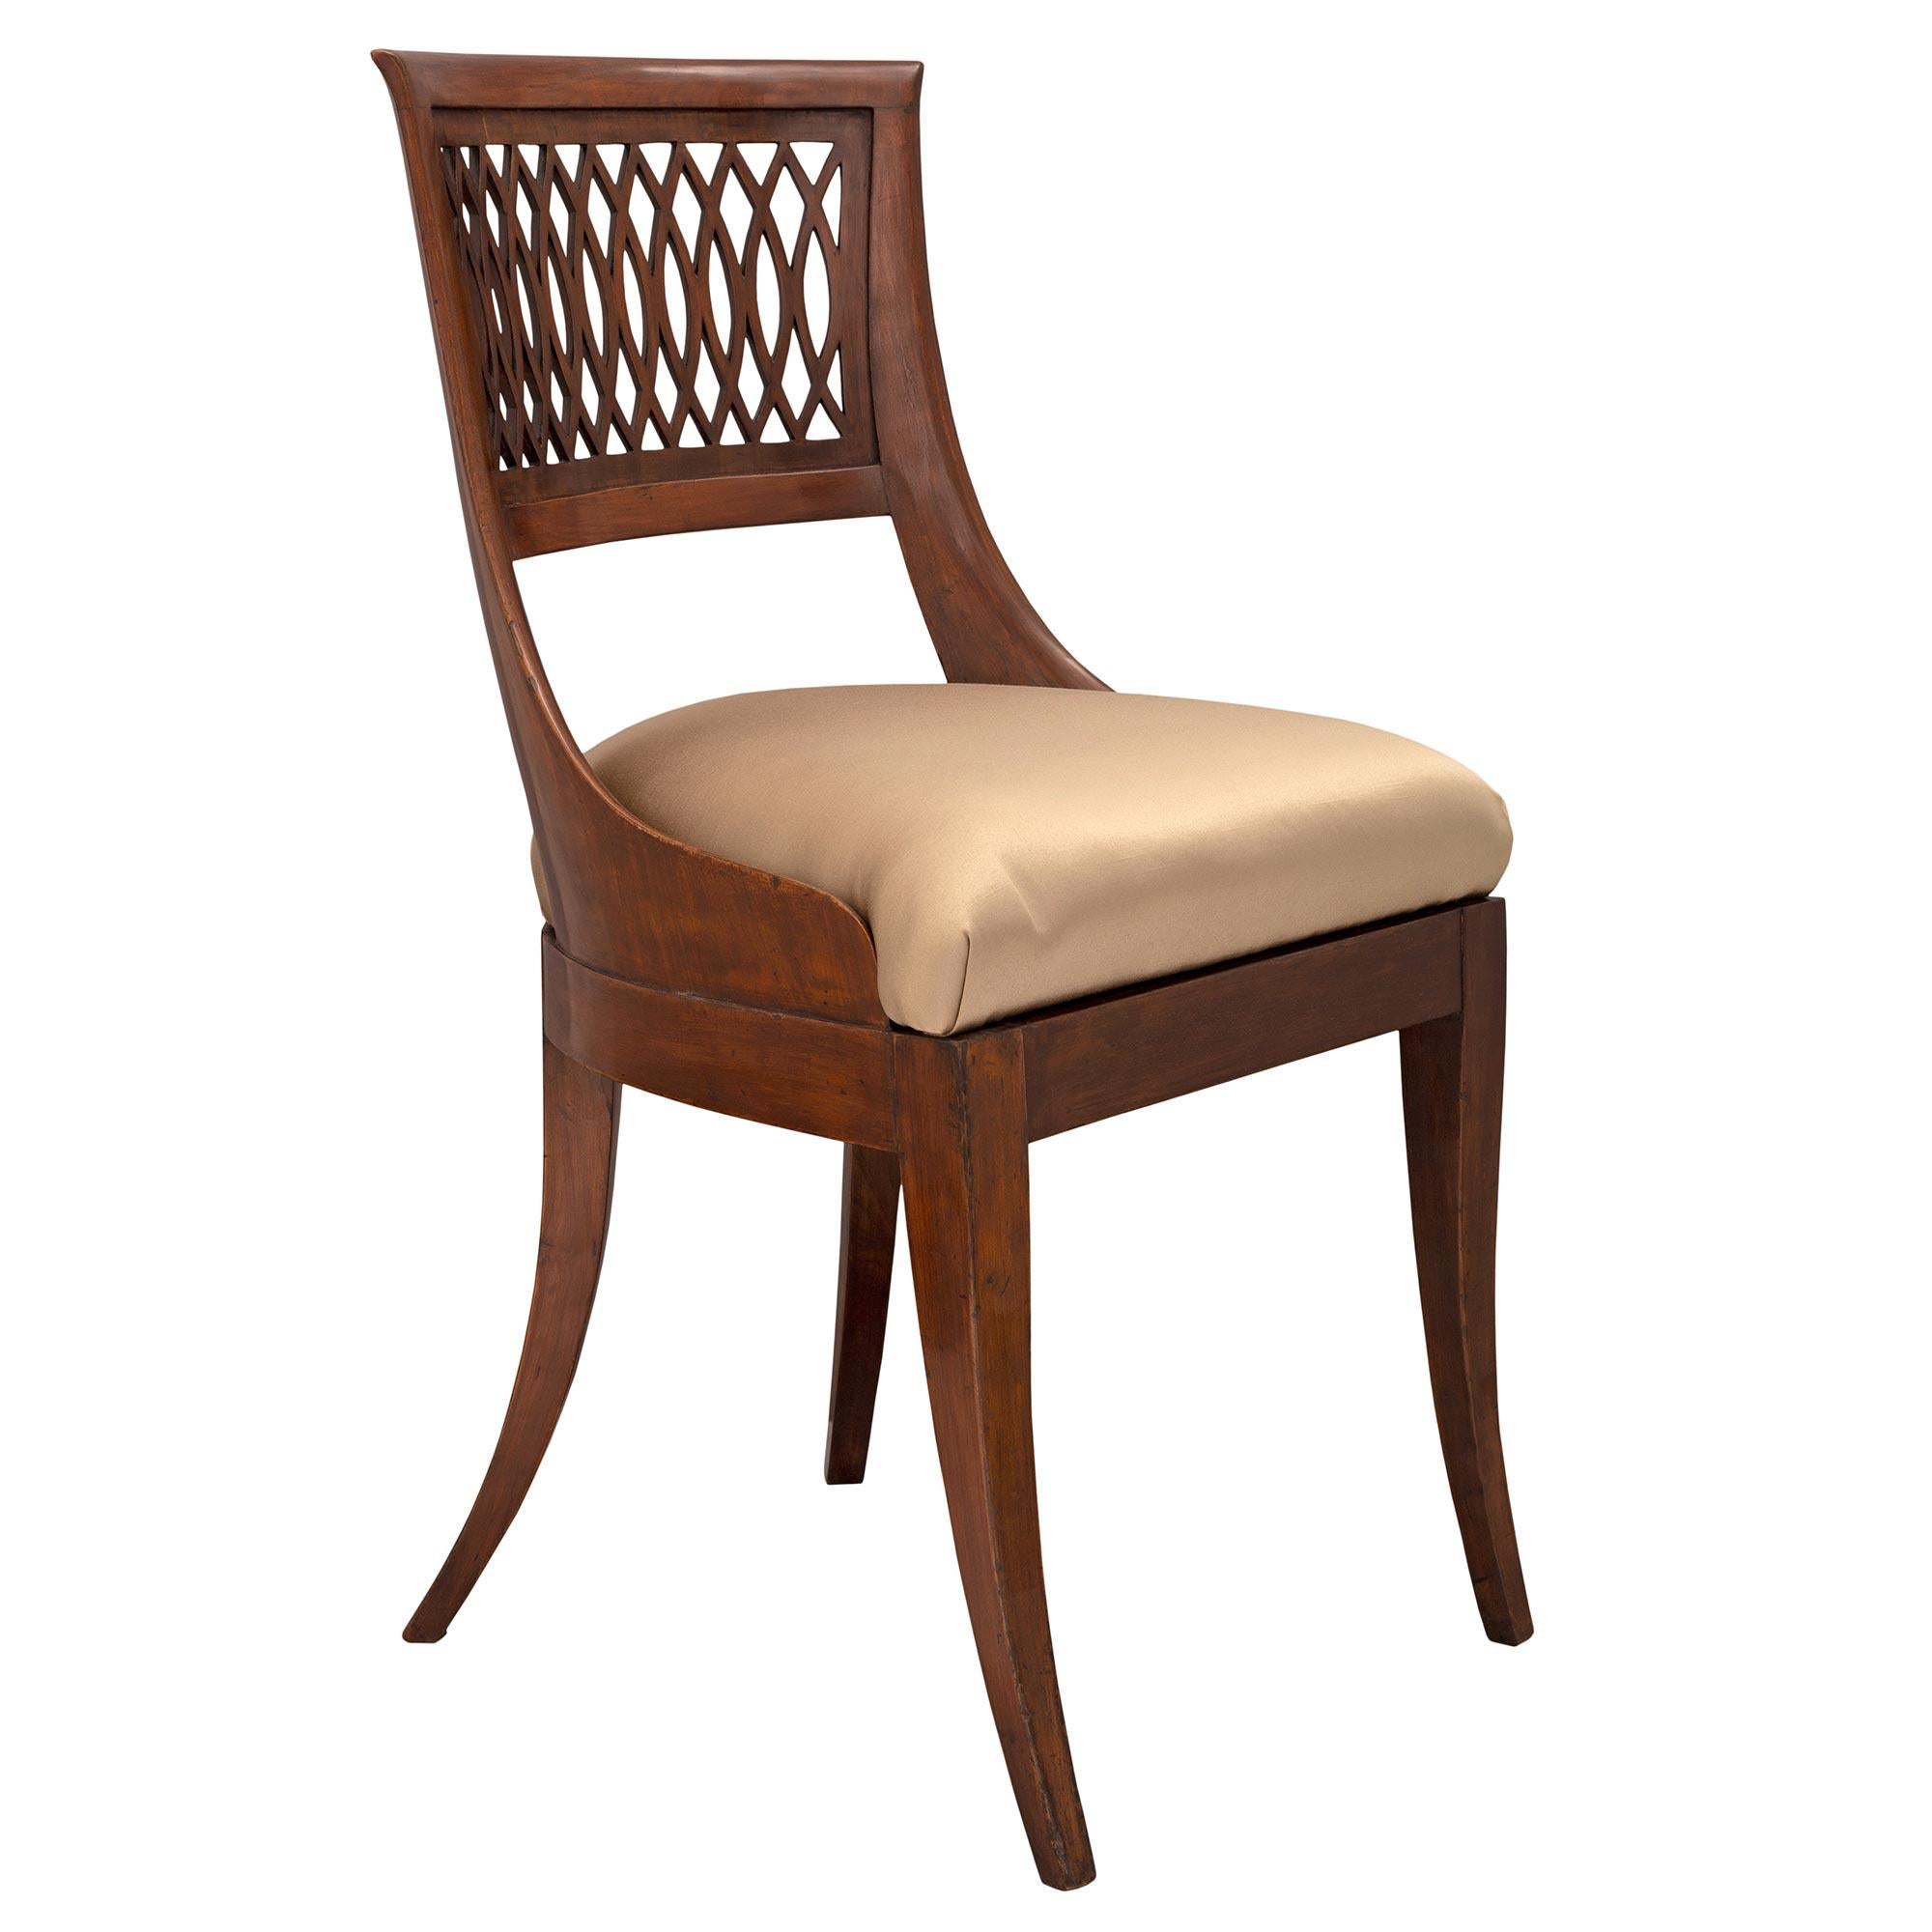 Ein außergewöhnlicher vollständiger Satz von sechs italienischen Esszimmerstühlen aus Olivenholz des 19. Jeder Stuhl wird von eleganten, leicht geschwungenen, quadratischen Beinen unter der geraden Schürze getragen. Die dekorativsten durchbrochenen